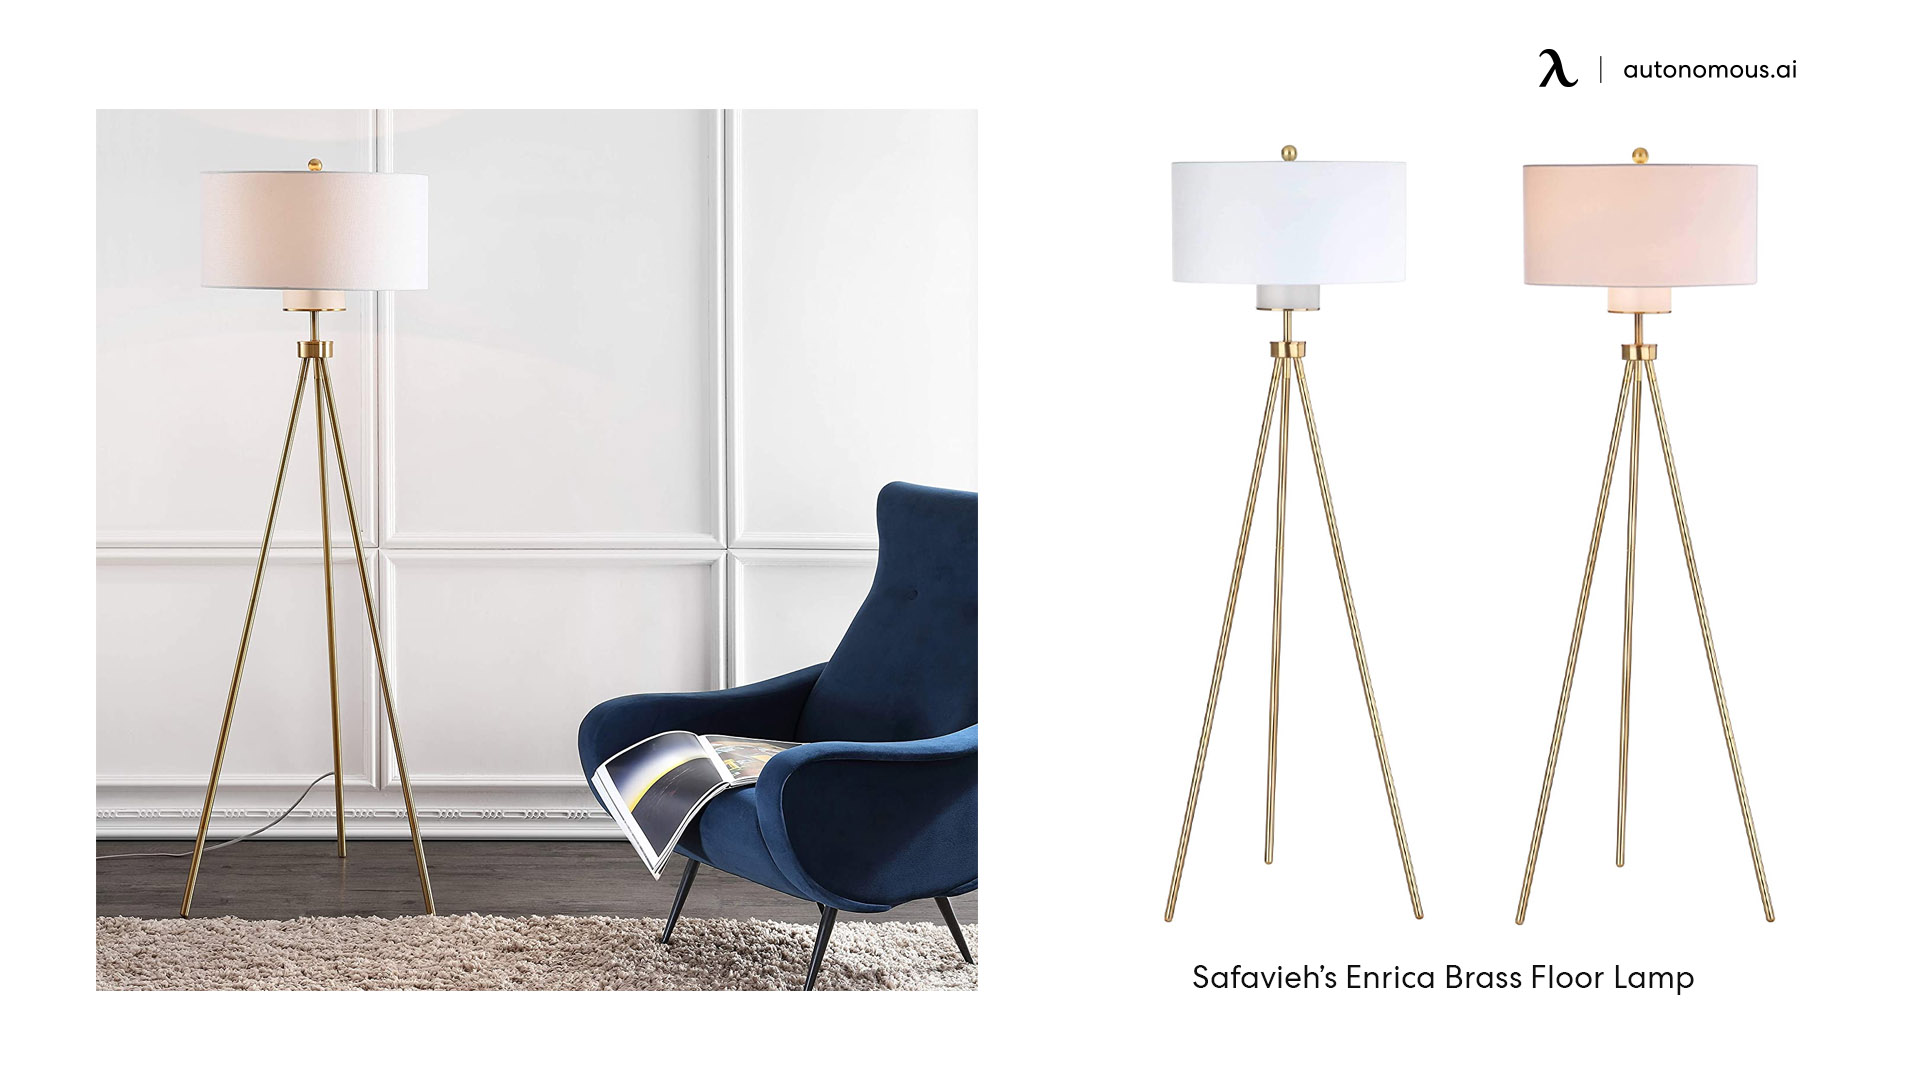 Safavieh’s Enrica brass floor lamps for living room